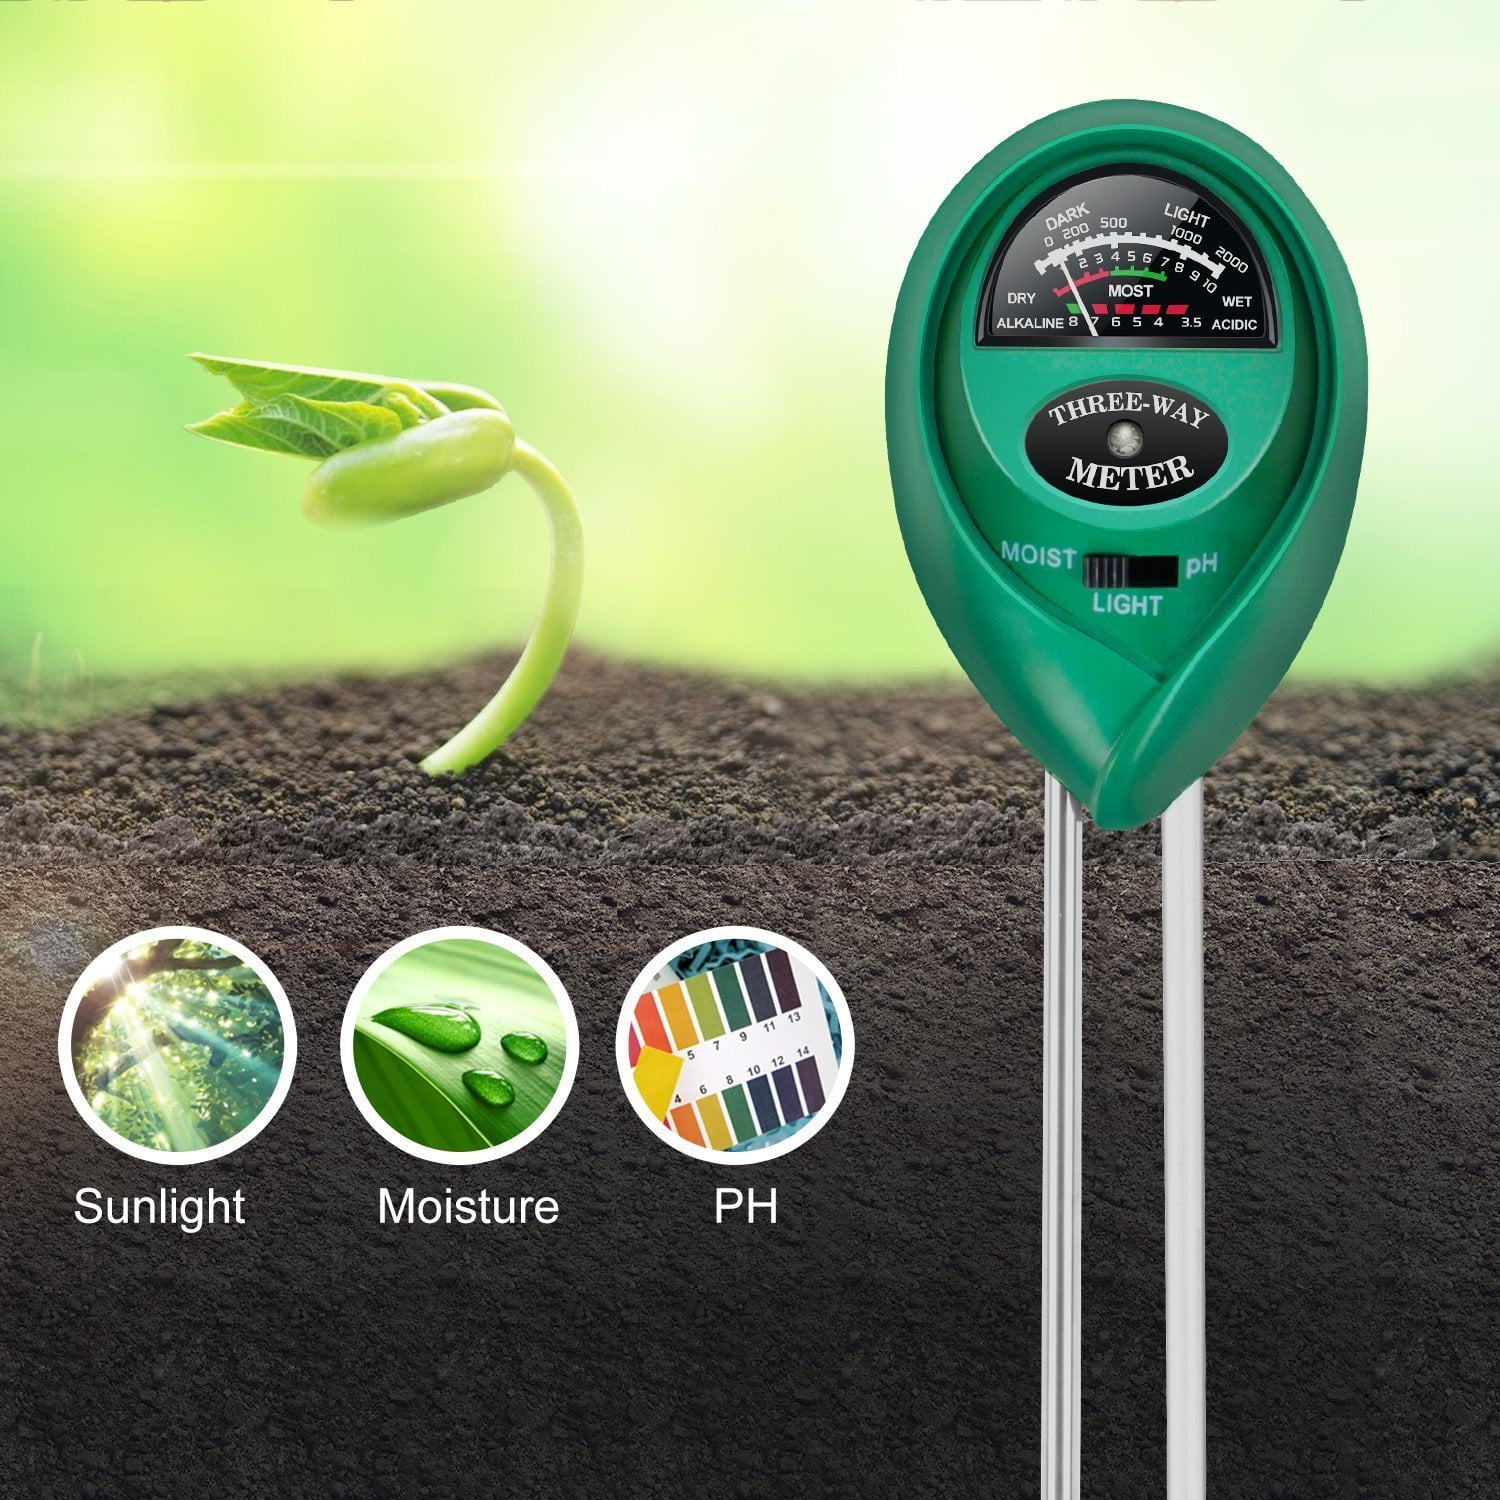 4x 3in1 Soil Tester Garden Lawn Plant Moisture Light PH Sensor Meter Test Tool 